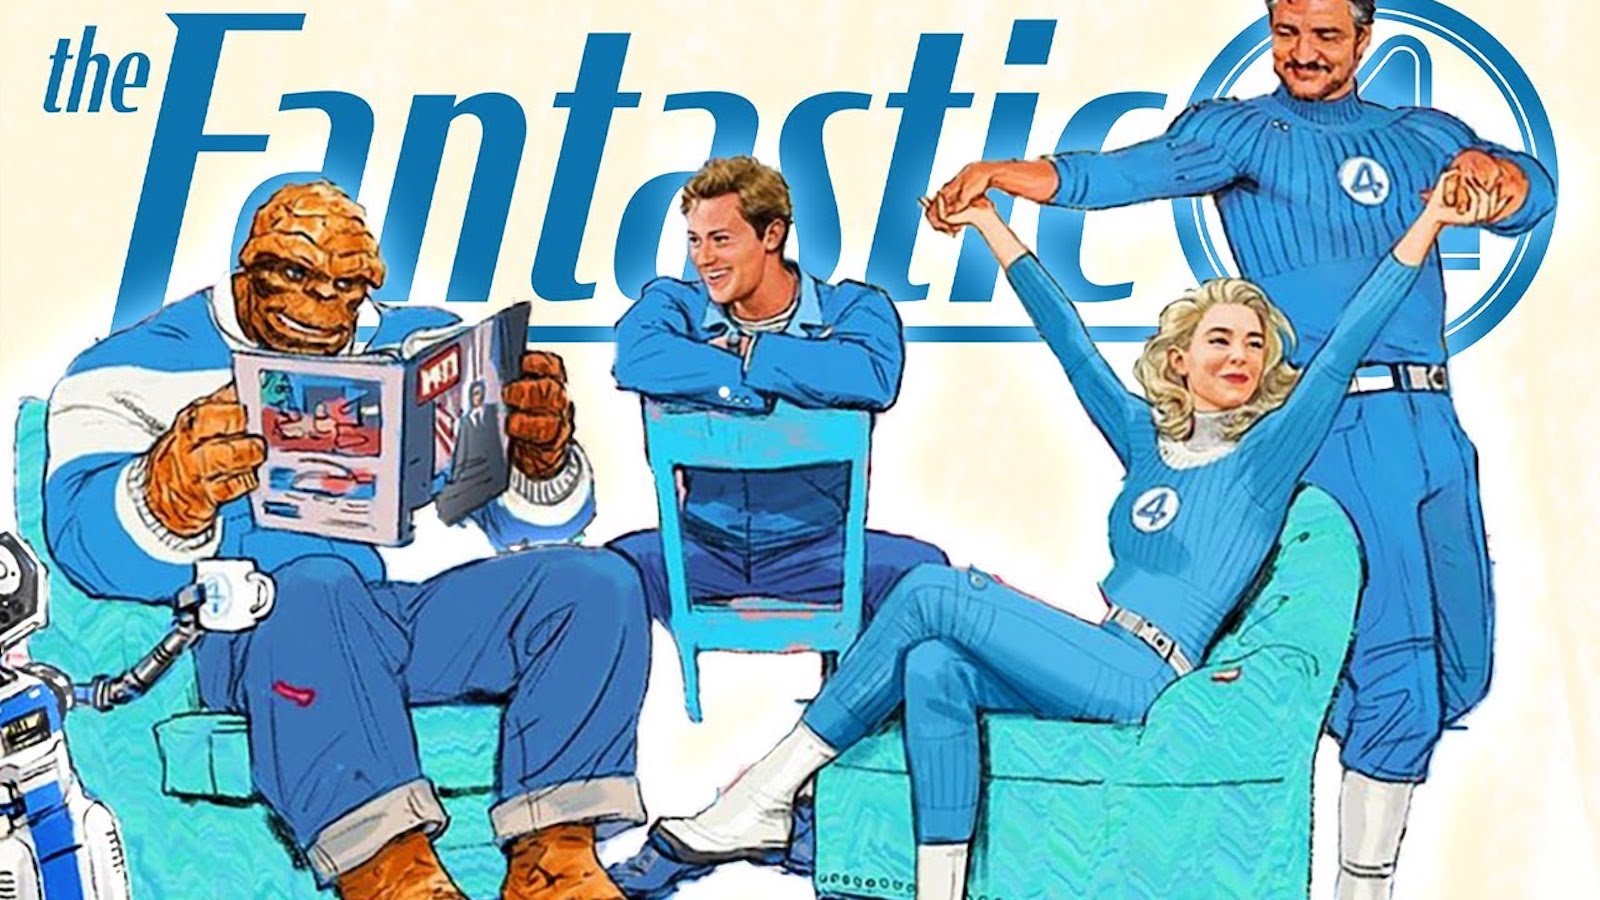 The Fantastic 4: ecco perché il film è ambientato negli anni '60 secondo una nuova teoria